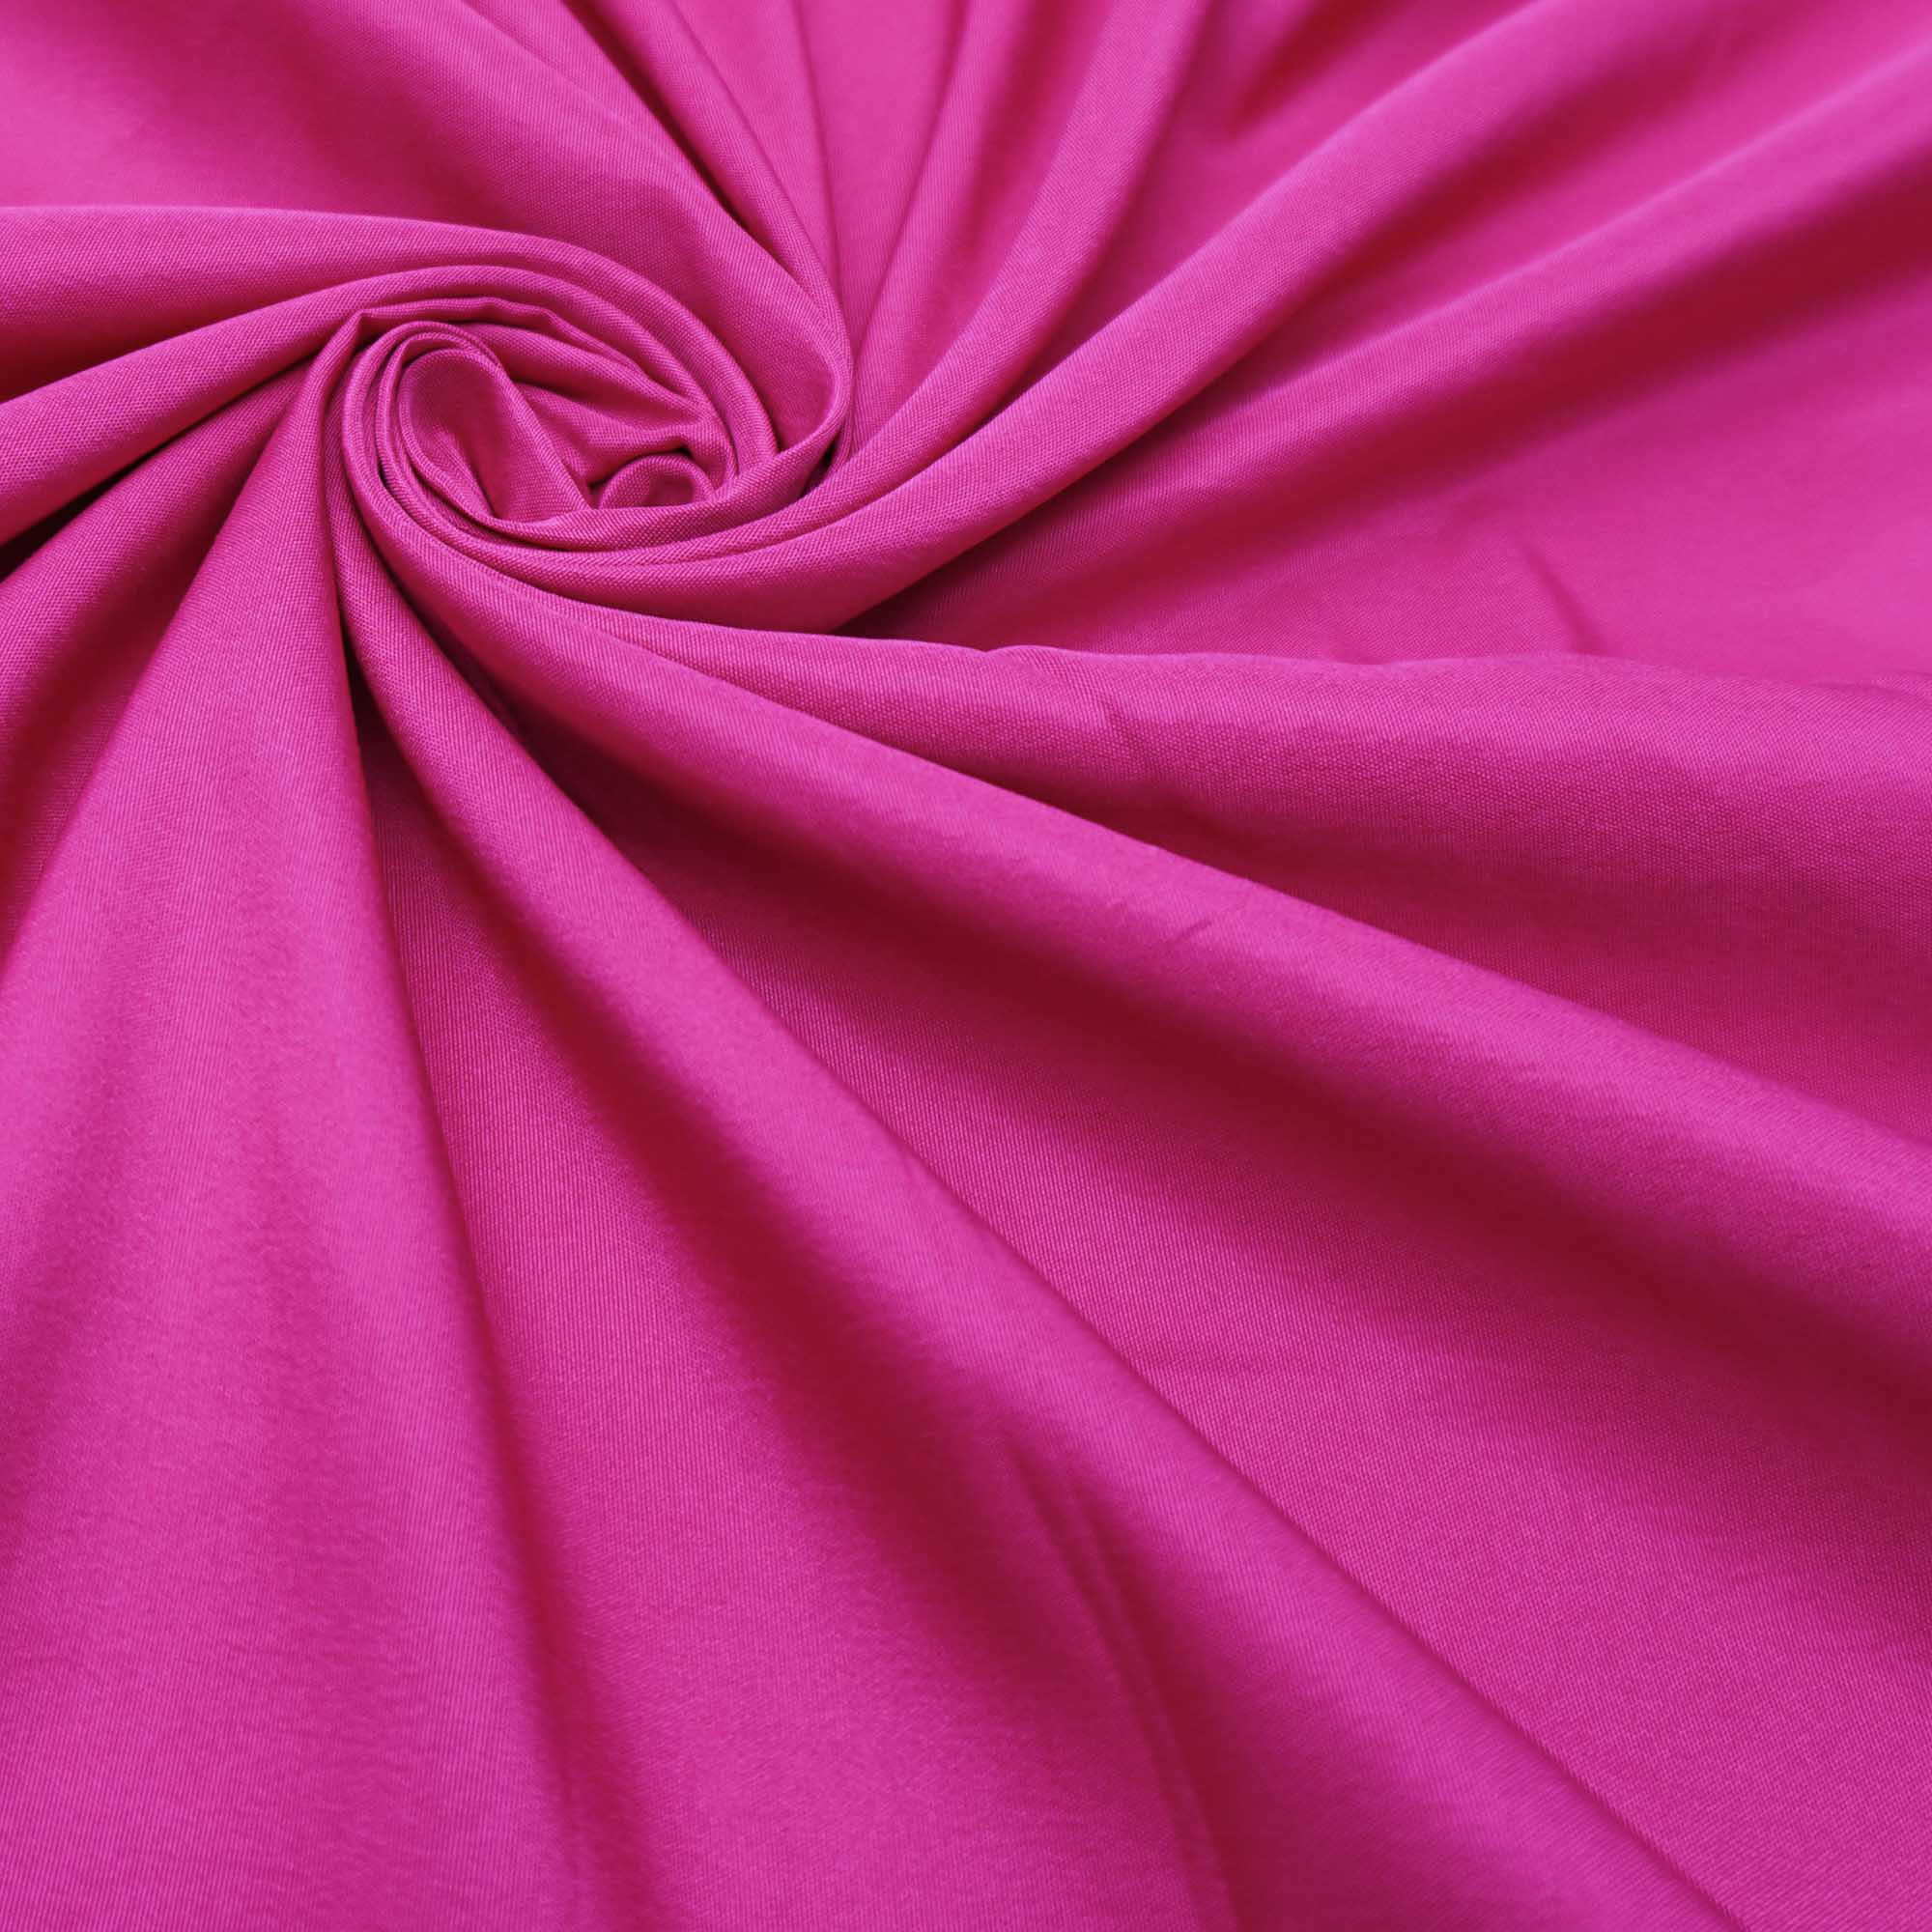 Tecido de forro pink